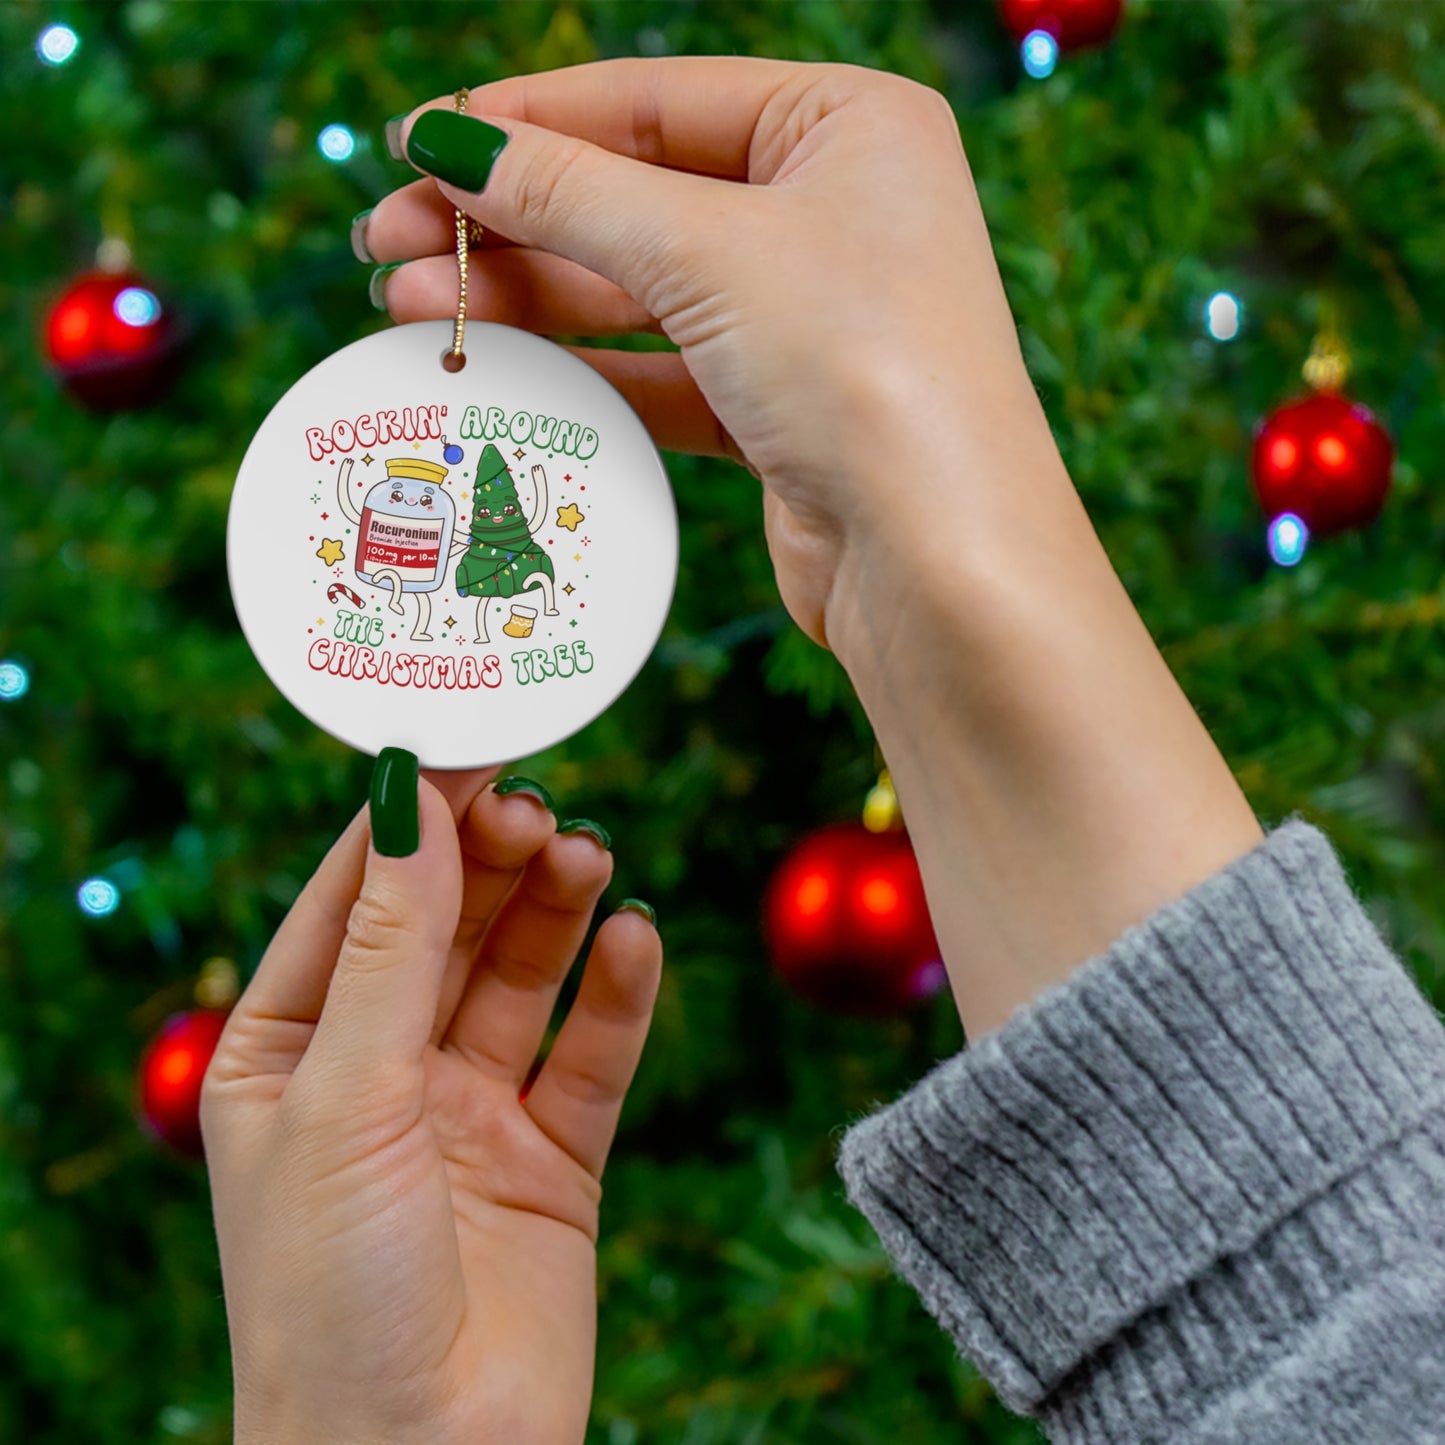 Rockin' Around Christmas Tree Ornament